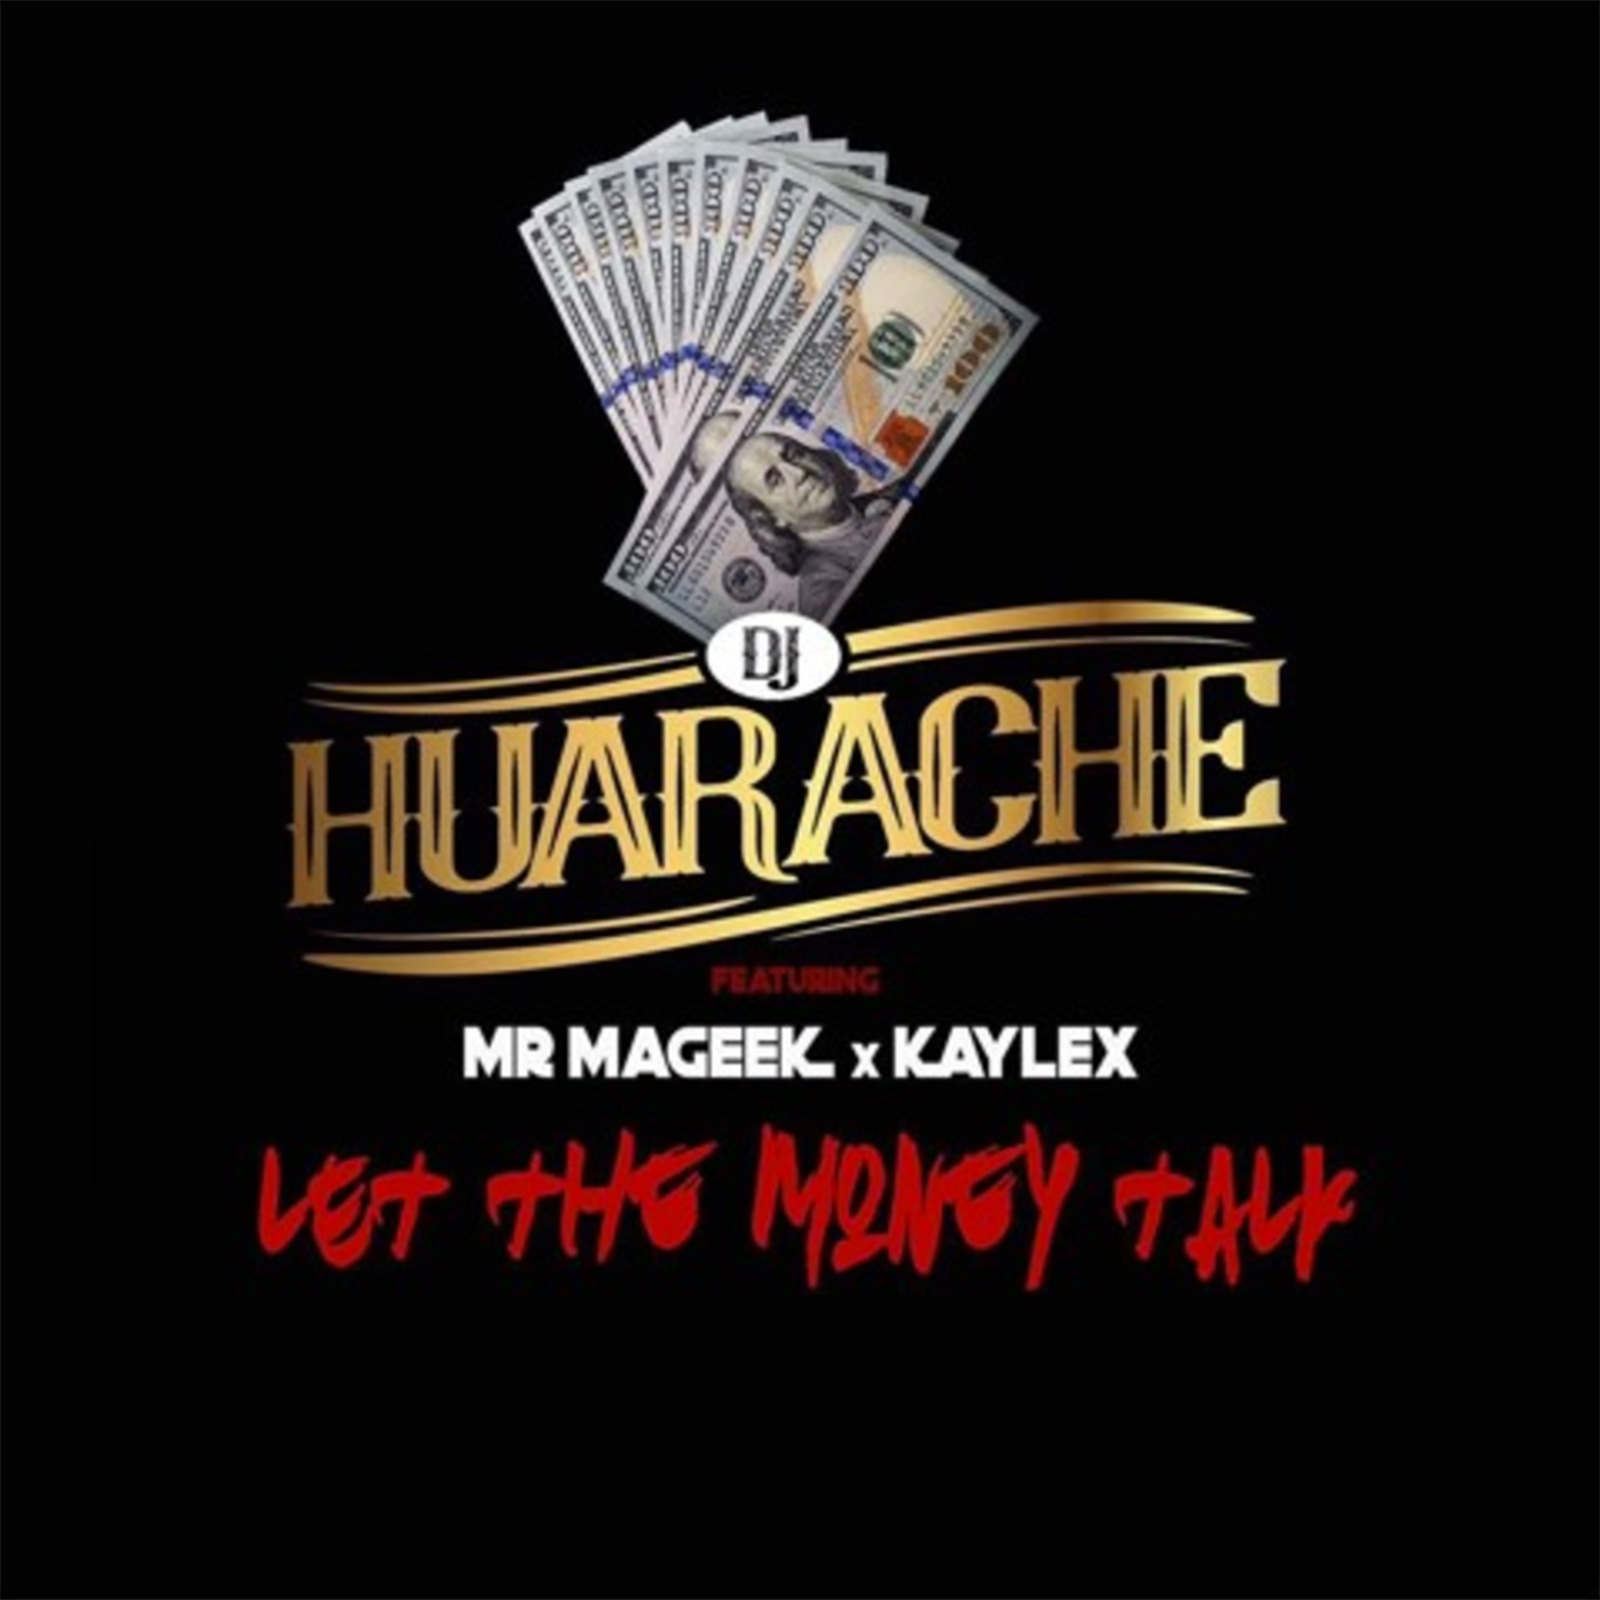 Let The Money Talk (Sshhh) by DJ Huarache feat. Mr Mageek & Kaylex